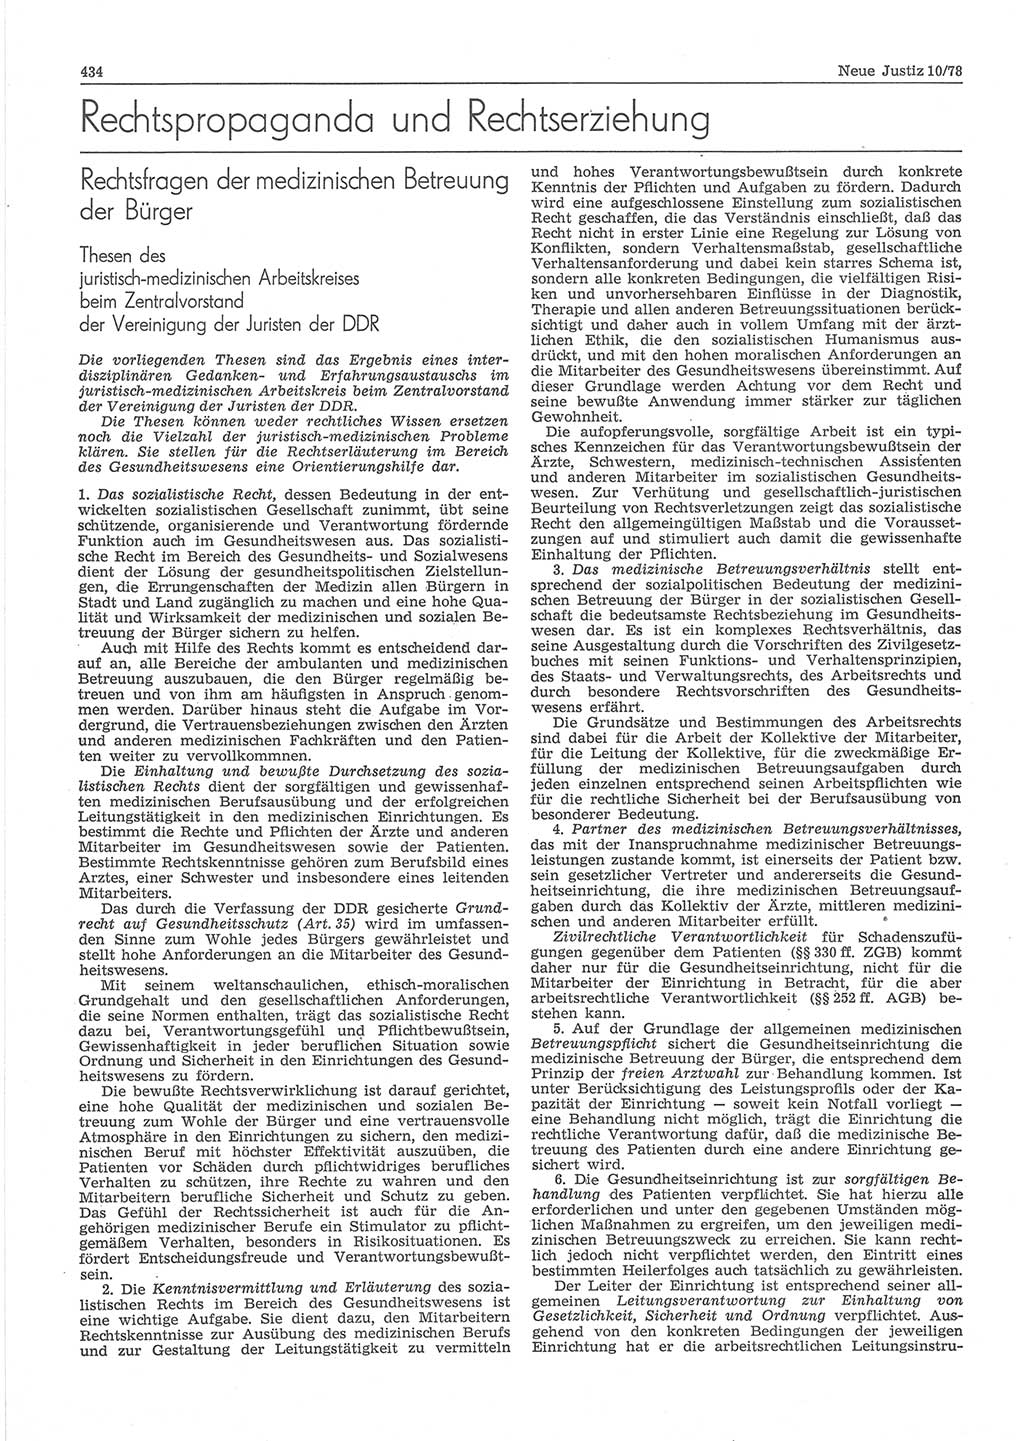 Neue Justiz (NJ), Zeitschrift für sozialistisches Recht und Gesetzlichkeit [Deutsche Demokratische Republik (DDR)], 32. Jahrgang 1978, Seite 434 (NJ DDR 1978, S. 434)